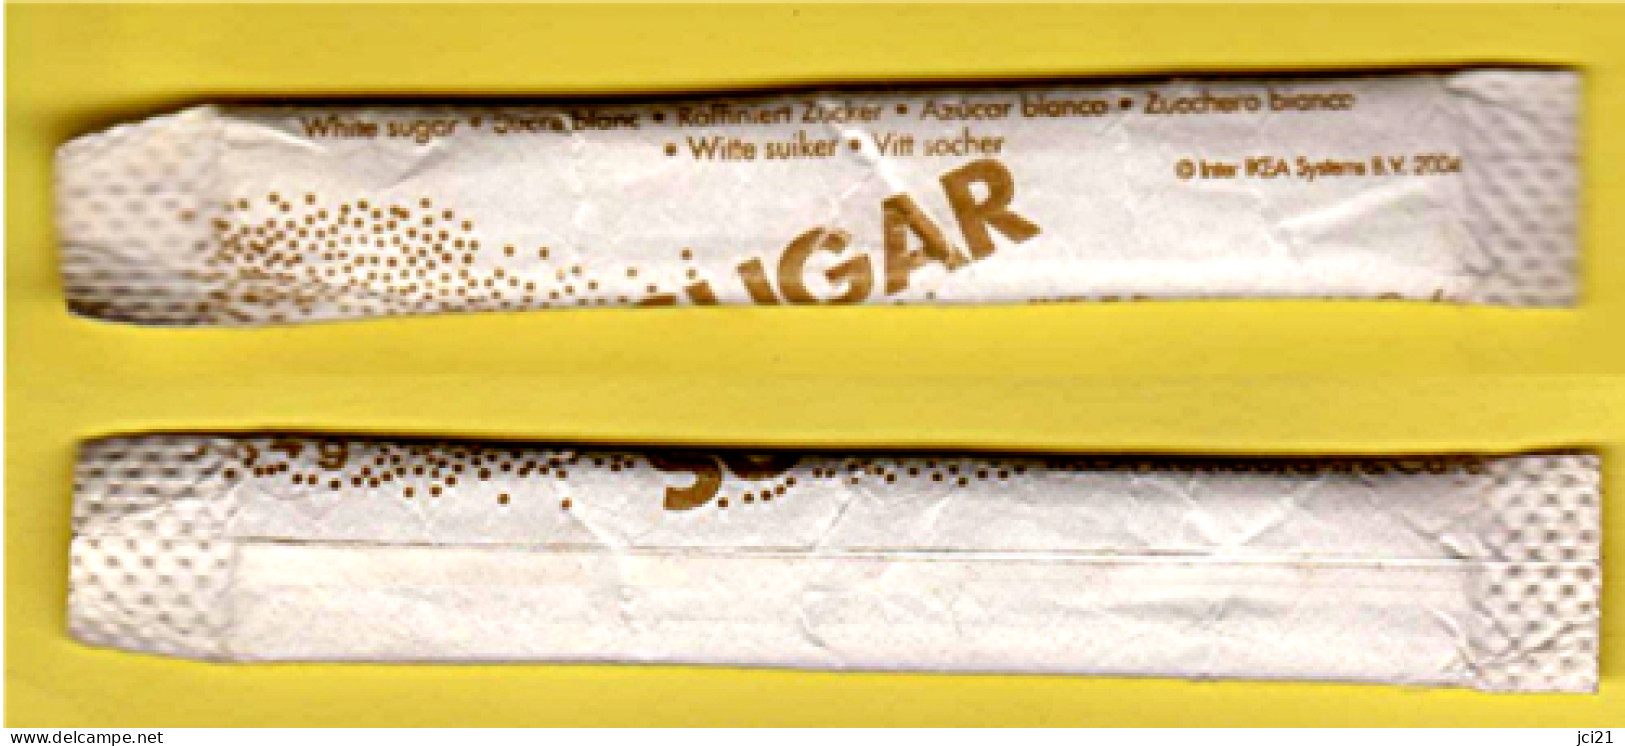 Stick De Sucre " SUGAR - IKEA " [S021]_D352 - Zucker